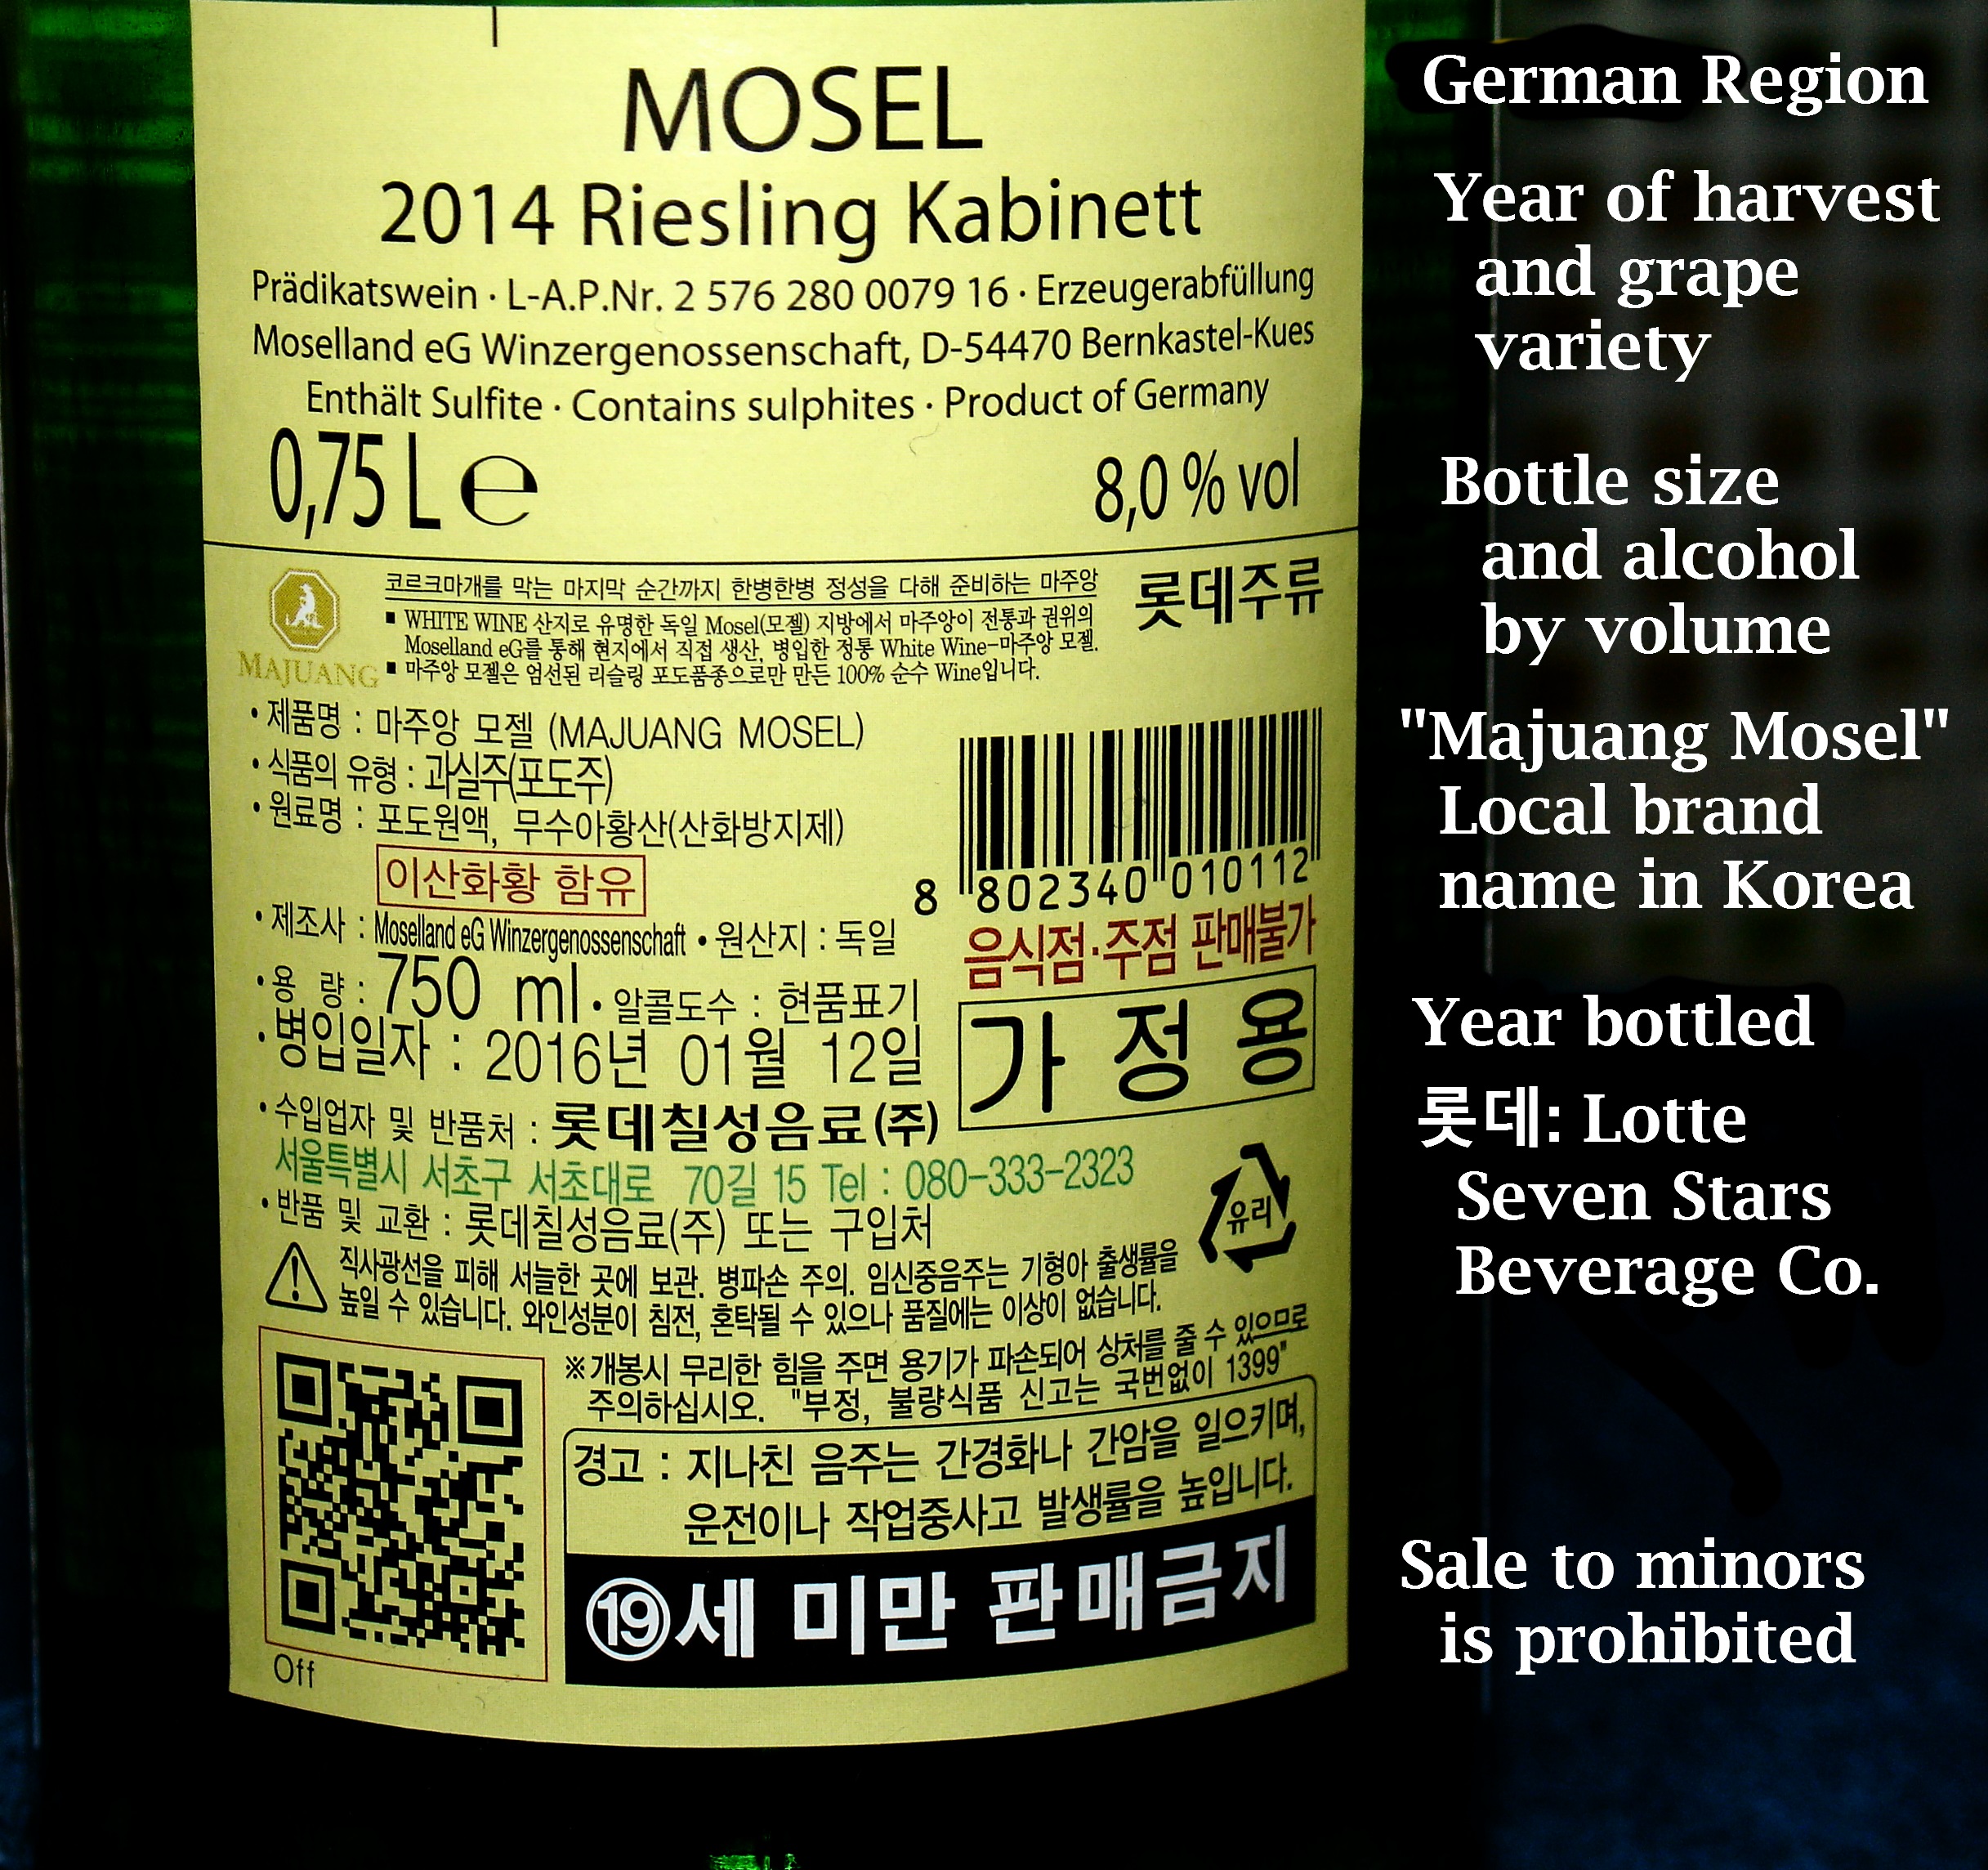 Back label of wine bottle.